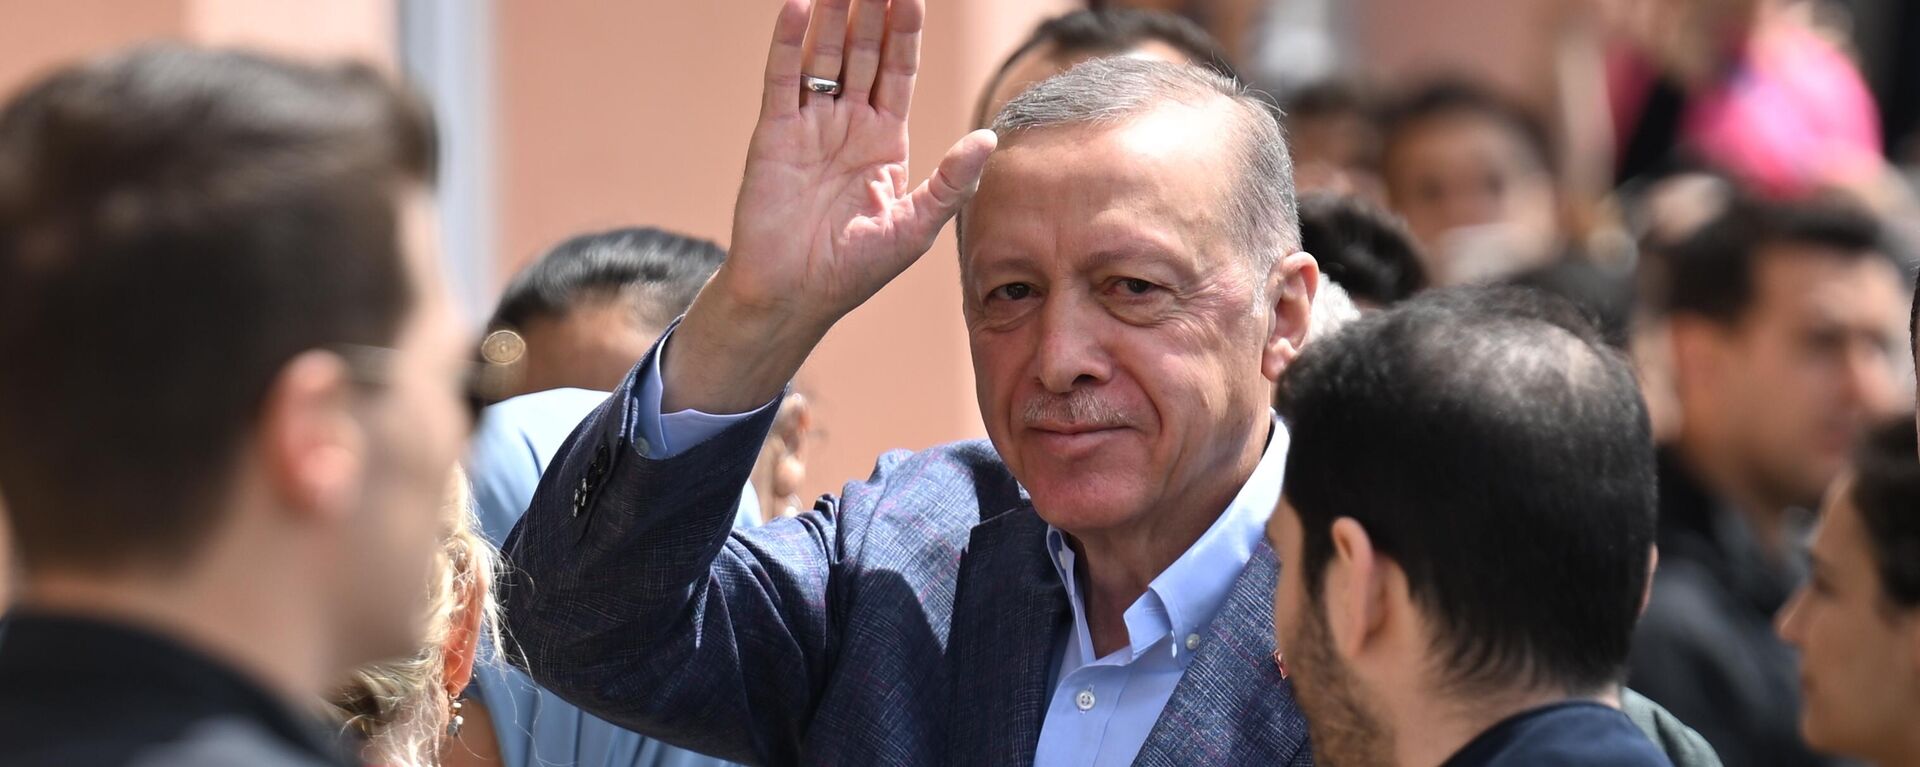 Tổng thống Thổ Nhĩ Kỳ Recep Tayyip Erdogan tại điểm bỏ phiếu trong cuộc bỏ phiếu trong cuộc tổng tuyển cử ở Istanbul - Sputnik Việt Nam, 1920, 29.05.2023